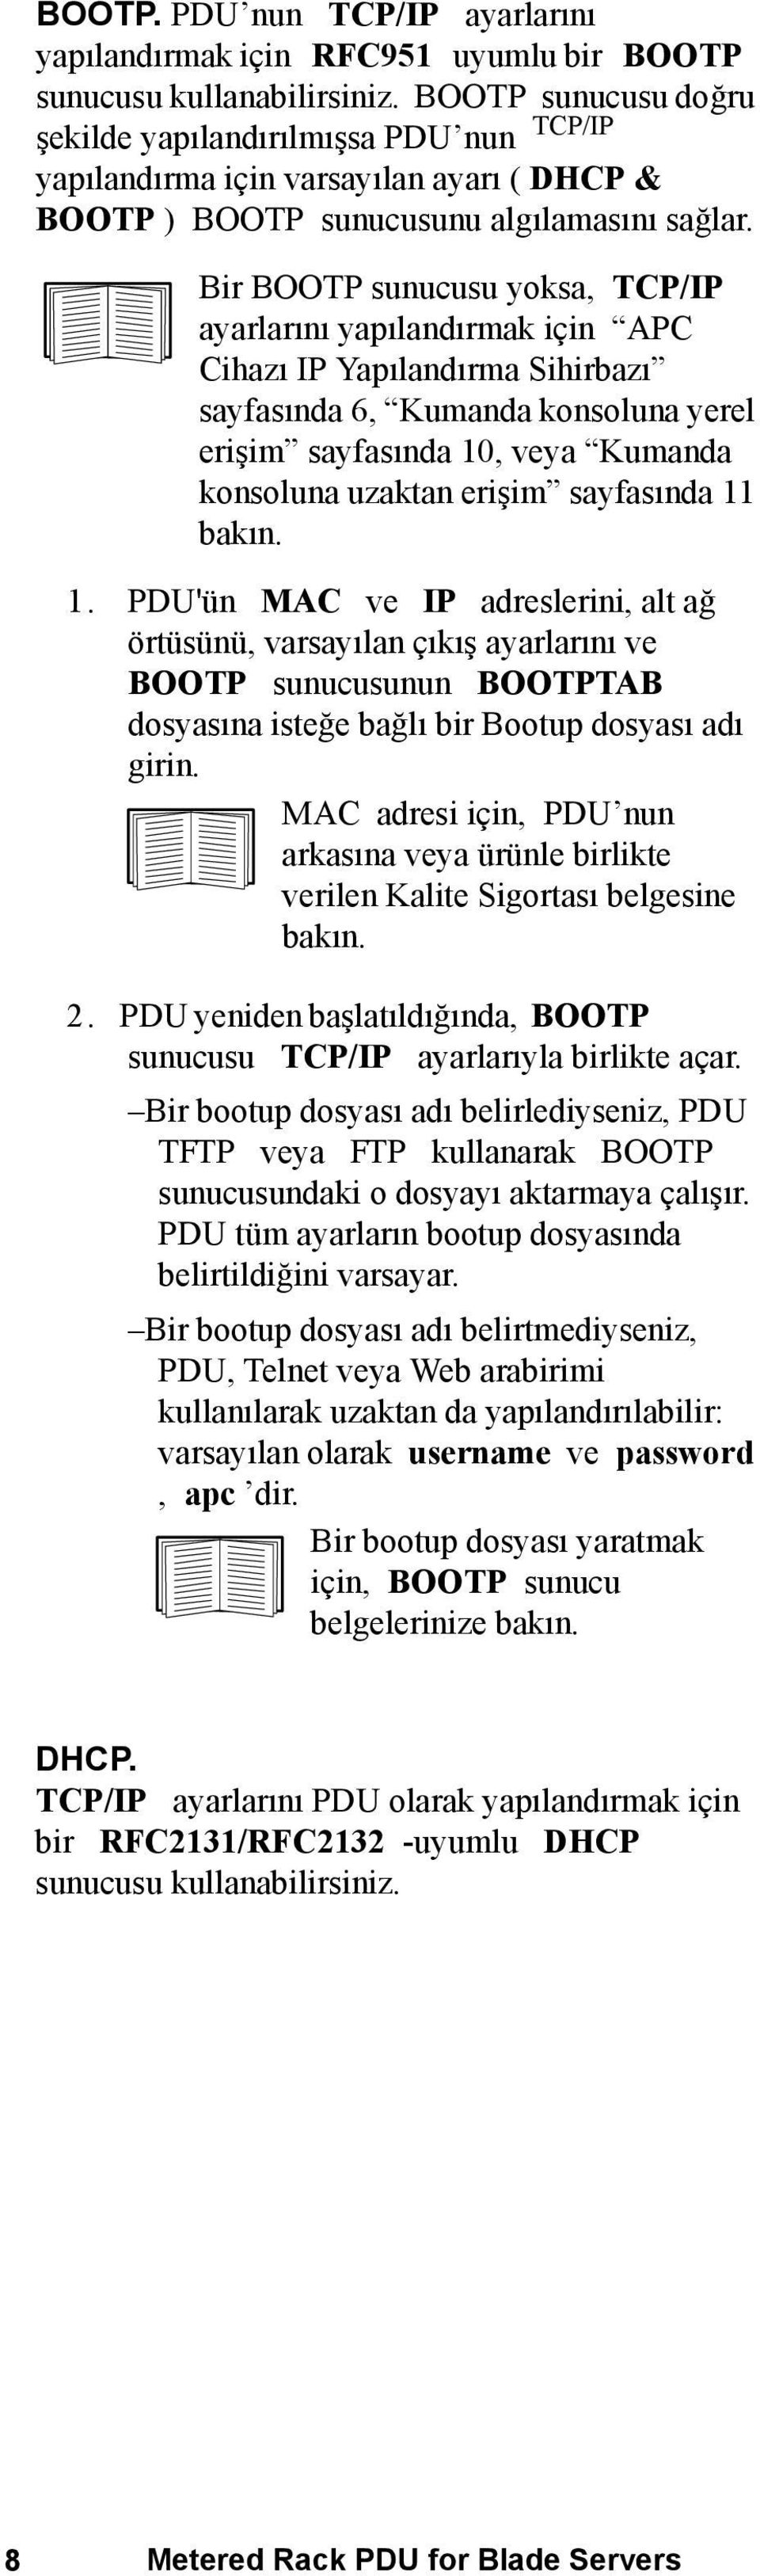 Bir BOOTP sunucusu yoksa, TCP/IP ayarlarını yapılandırmak için APC Cihazı IP Yapılandırma Sihirbazı sayfasında 6, Kumanda konsoluna yerel erişim sayfasında 10, veya Kumanda konsoluna uzaktan erişim